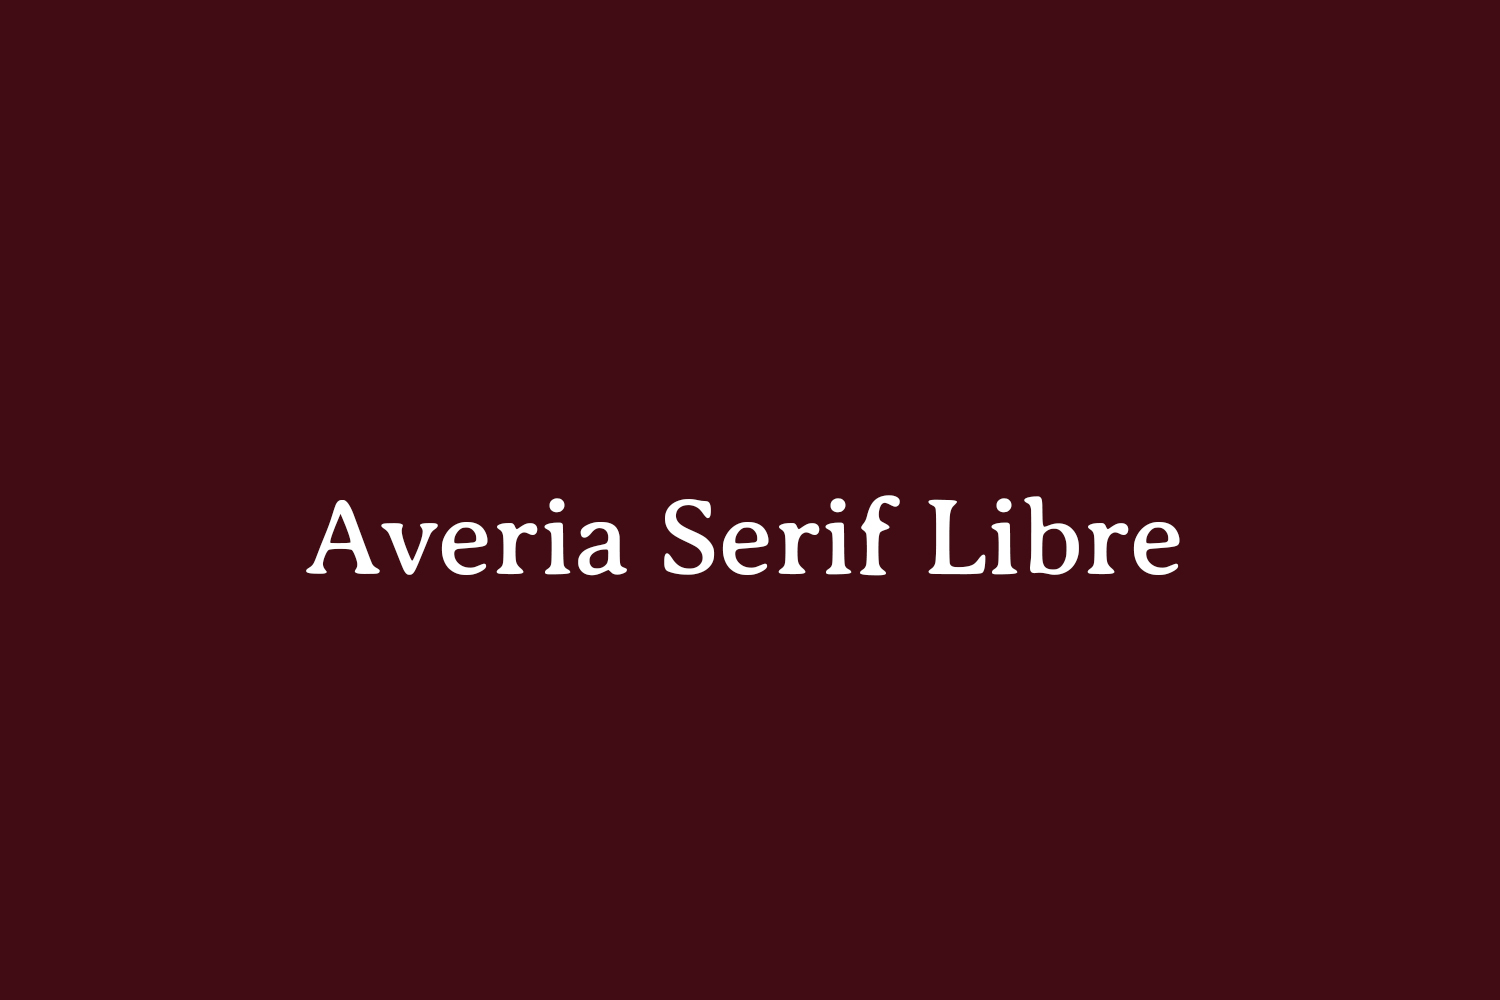 Averia Serif Libre